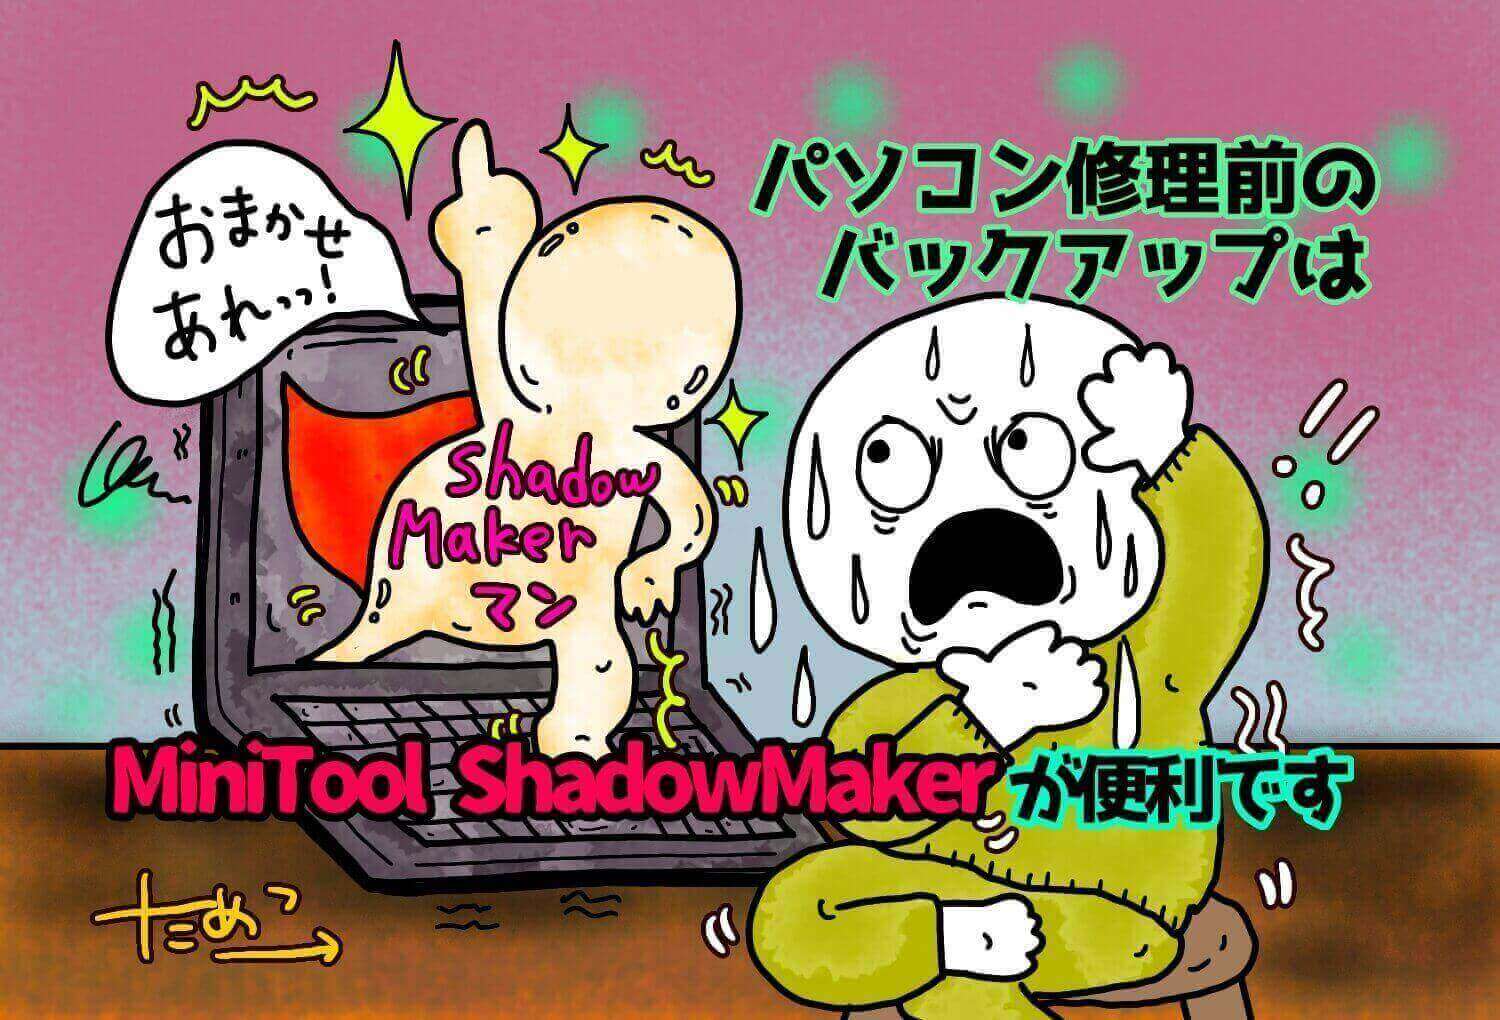 パソコン修理前のデータバックアップはMiniTool ShadowMakerが便利です